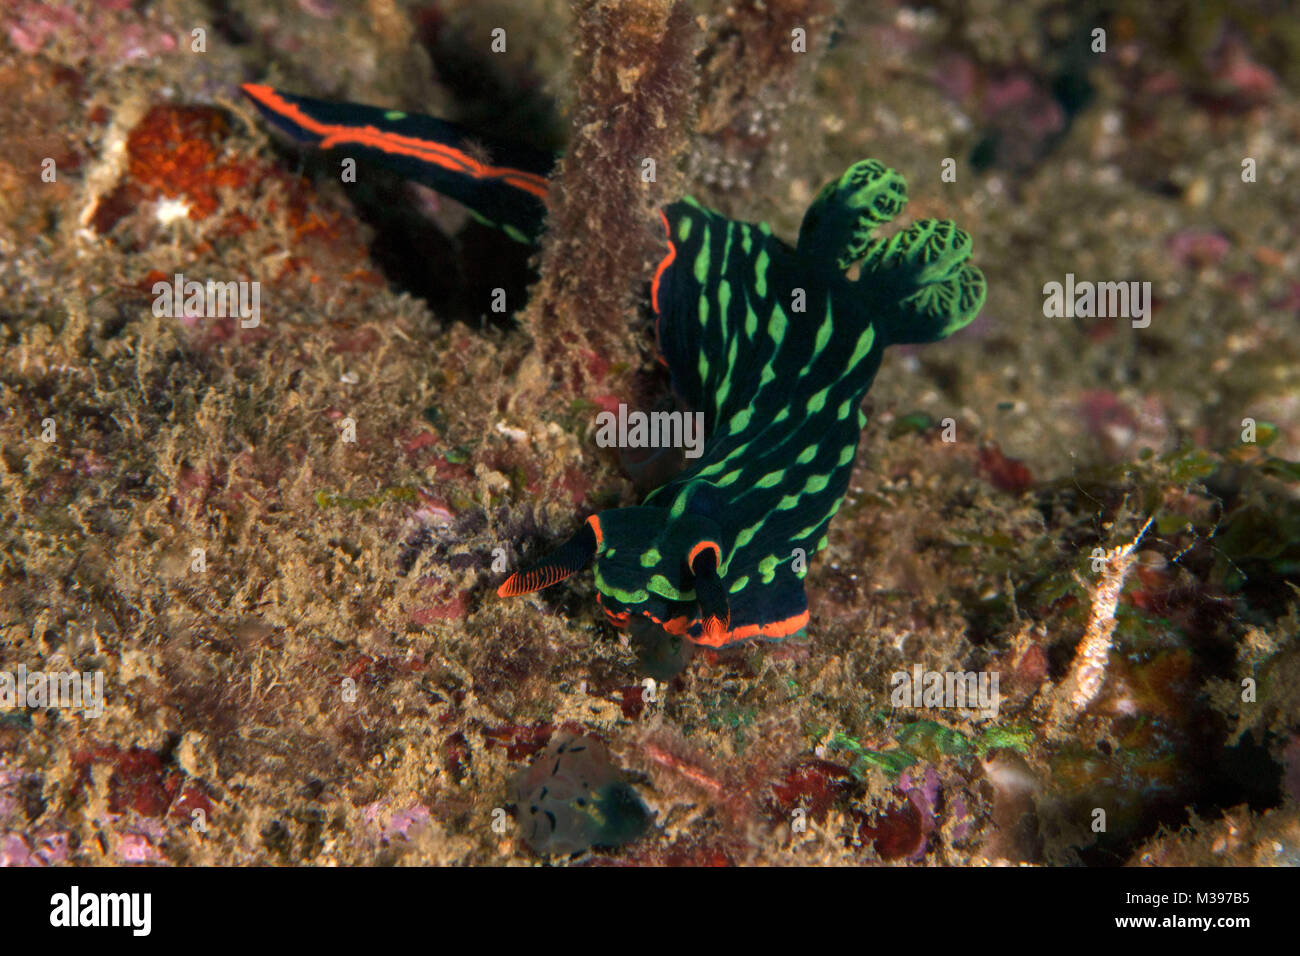 Nudibranch Nembrotha kubaryana. Puerto Galera, Philippines Stock Photo